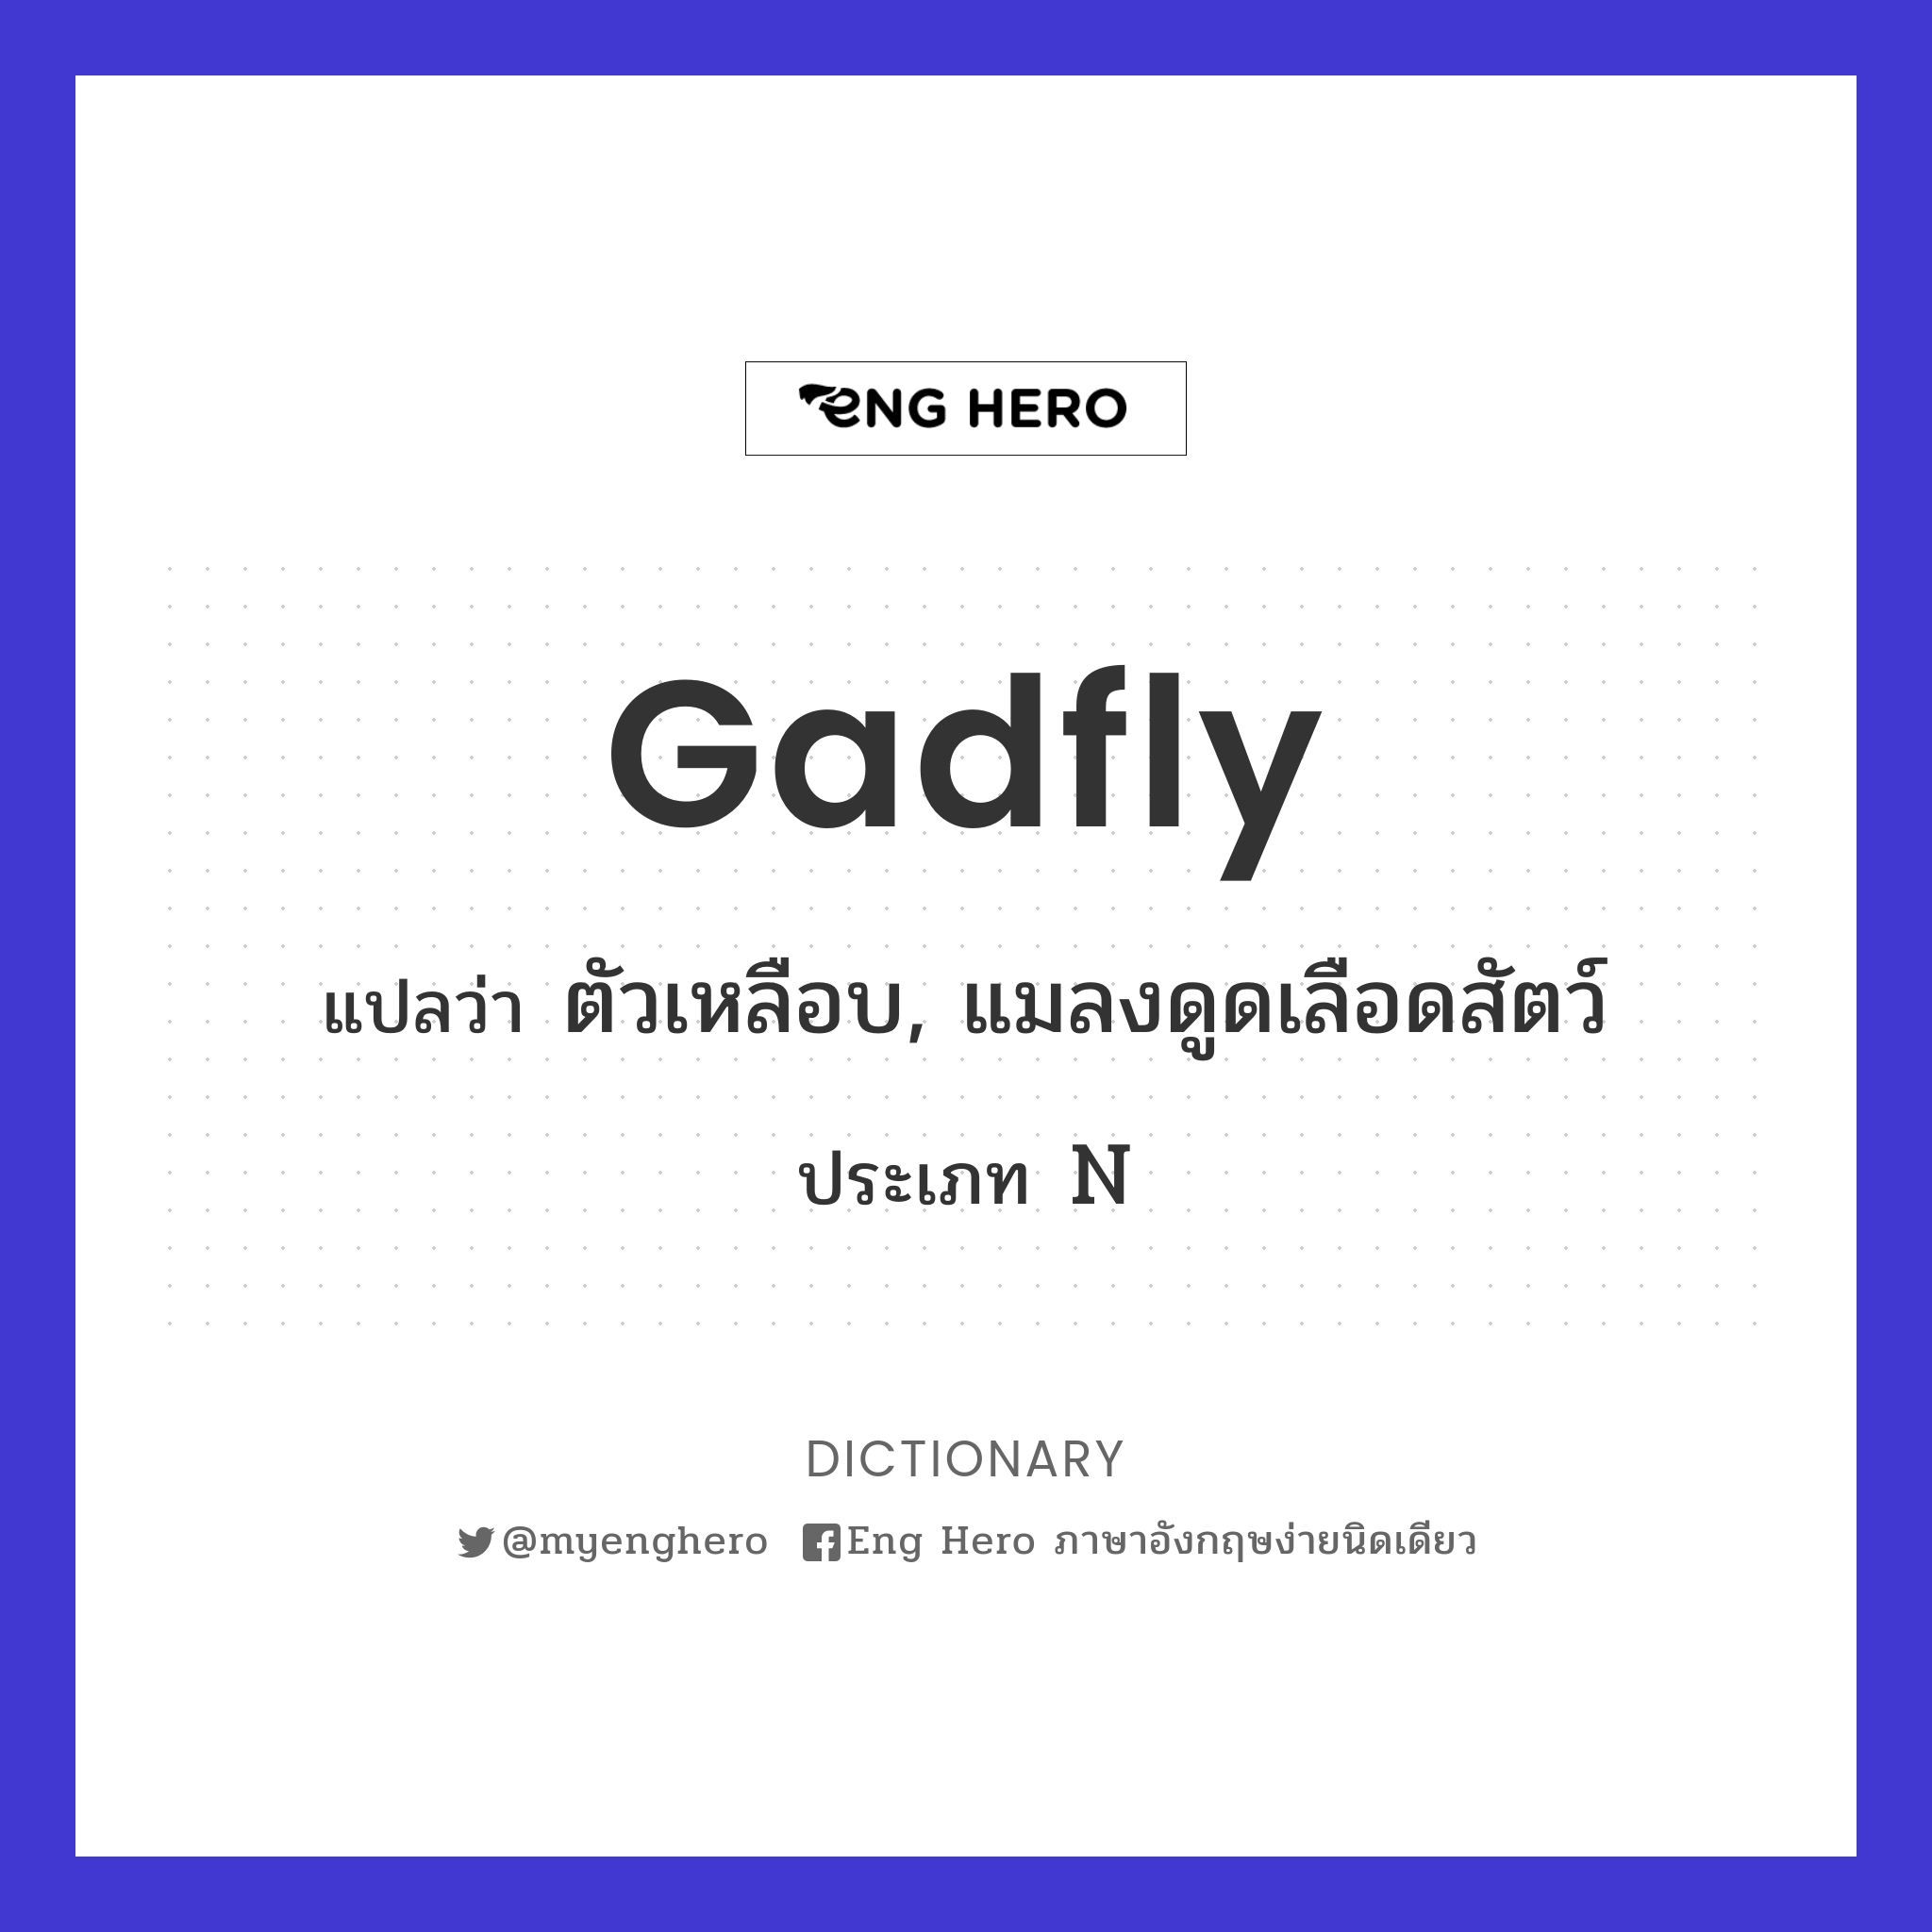 gadfly